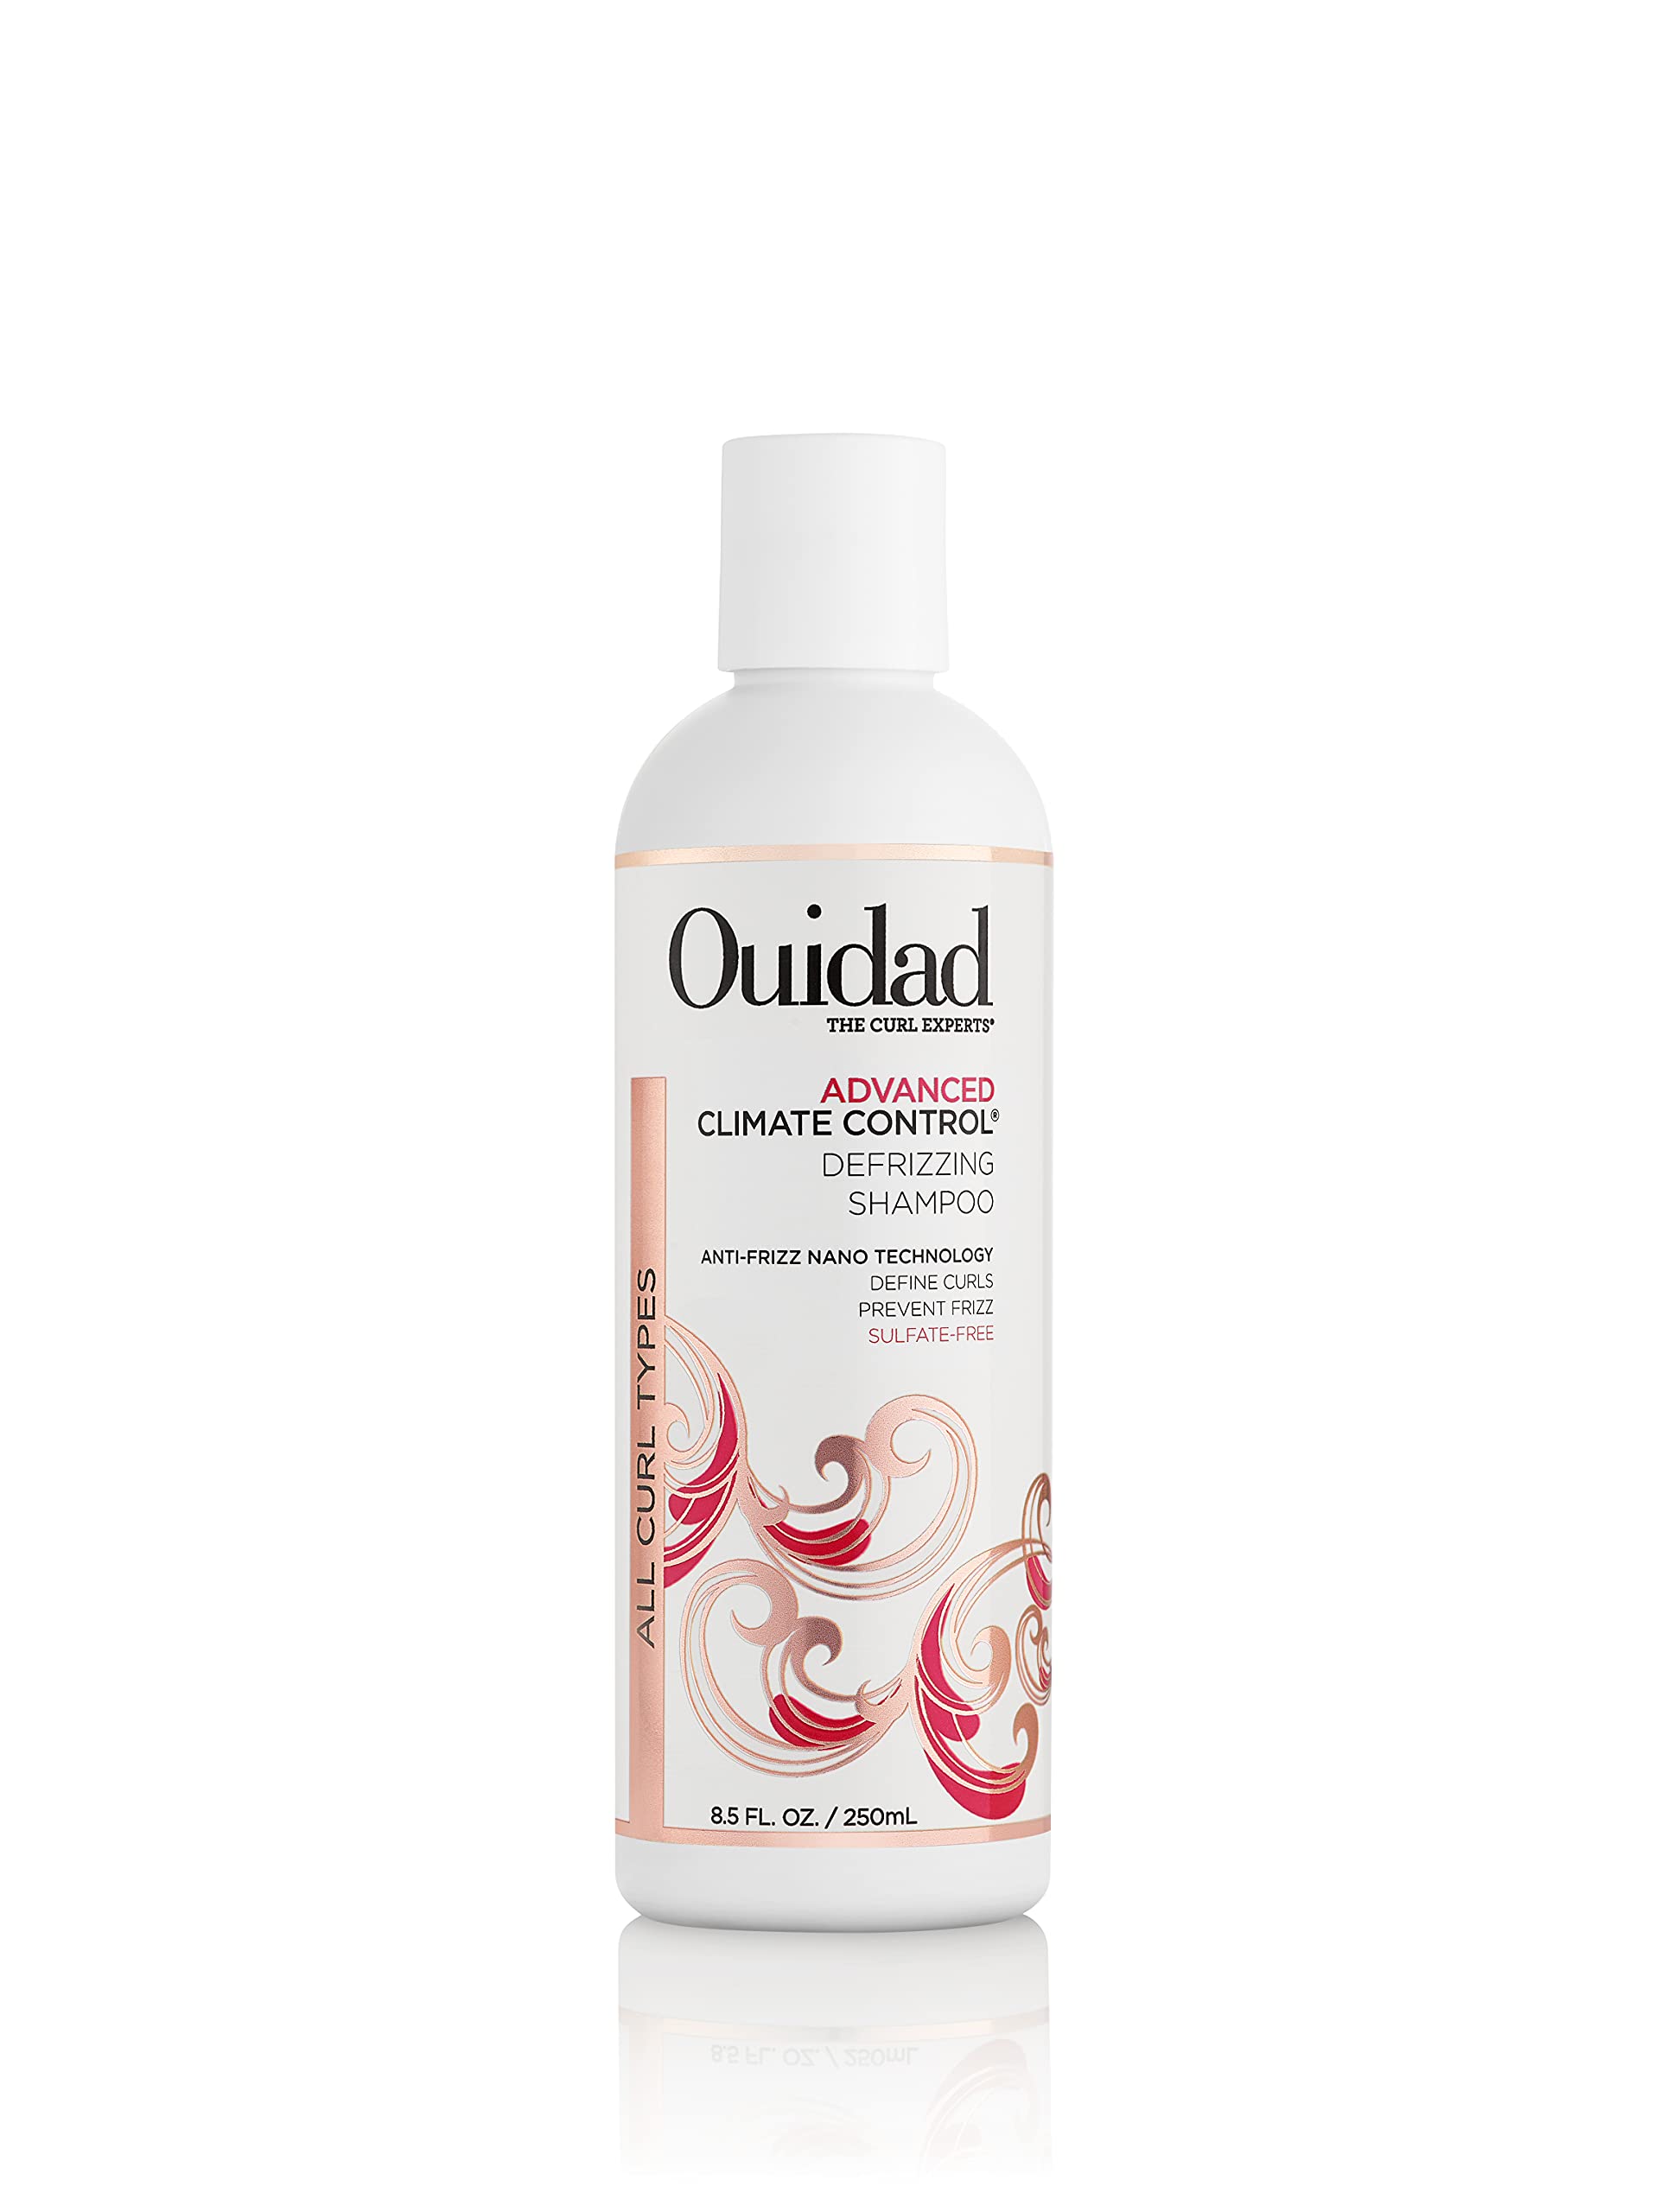 Ouidad Advanced Climate Control Defrizzing Shampoo, 8.5 Fl Oz